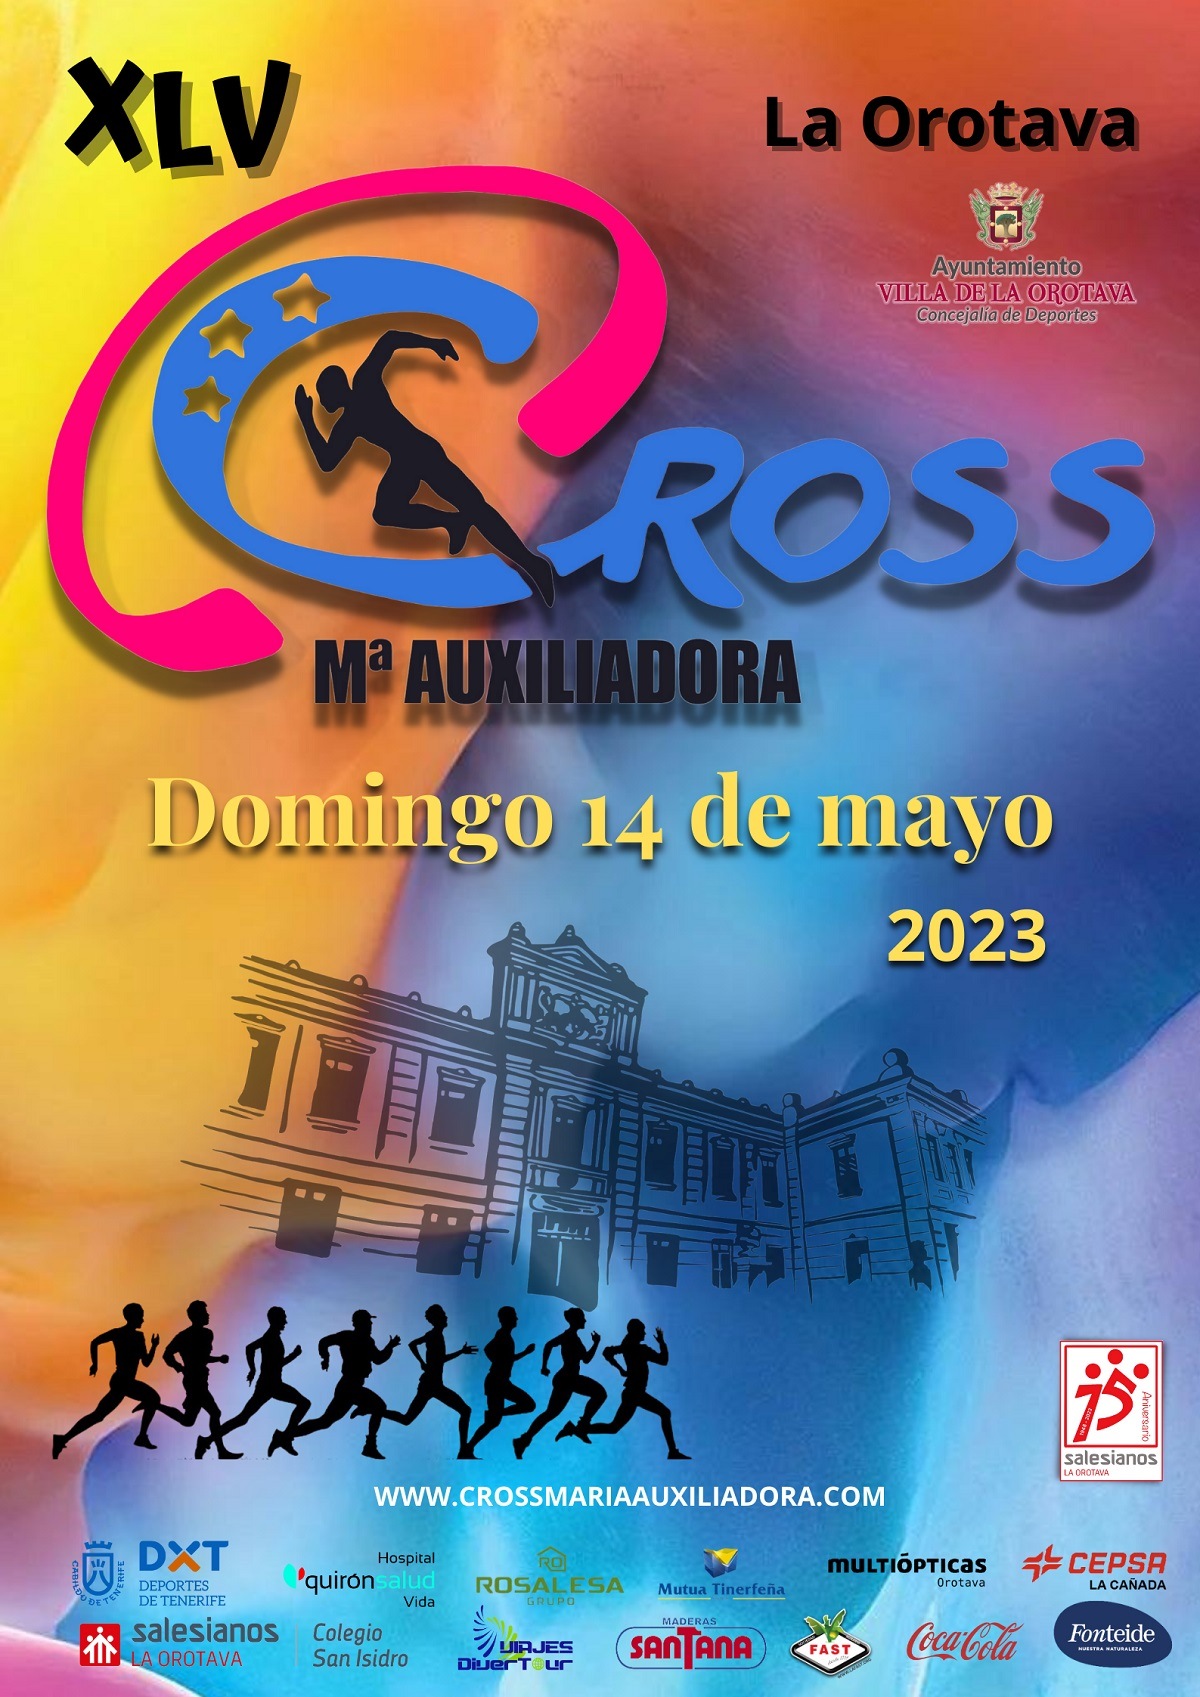 XLV CROSS MARIA AUXILIADORA 2023 - Inscríbete